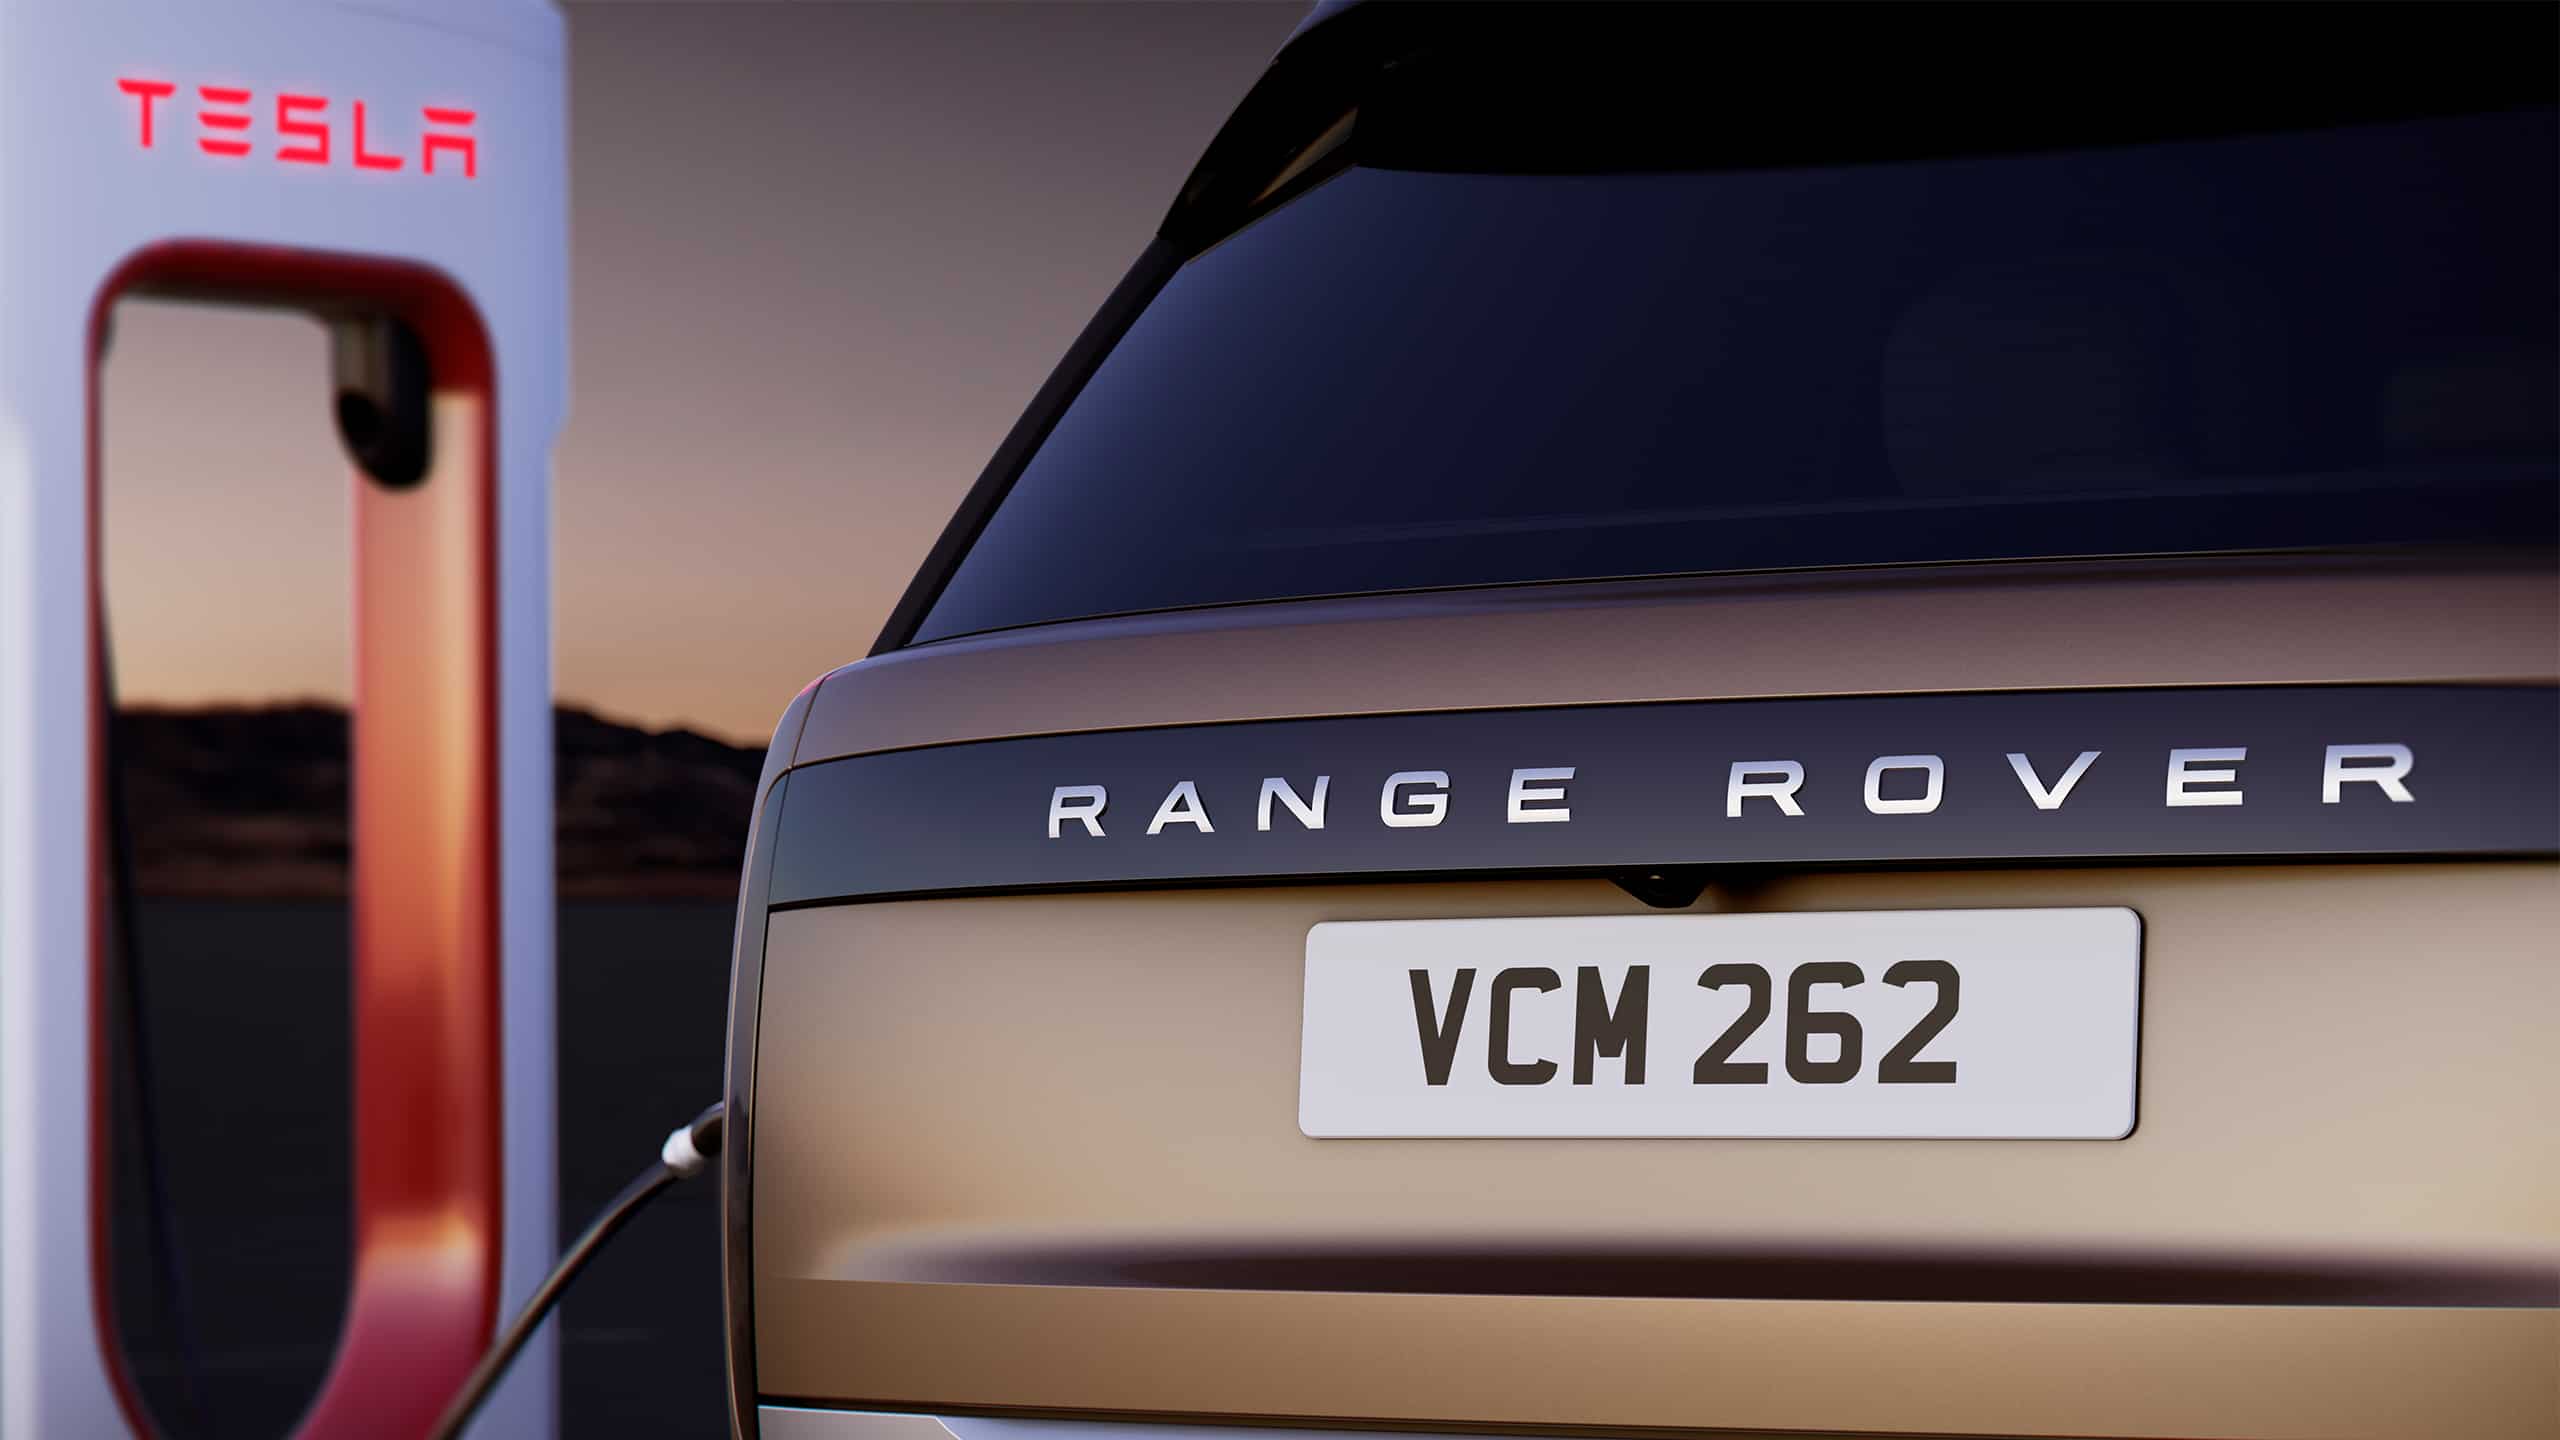 Land Rover Tesla Charging